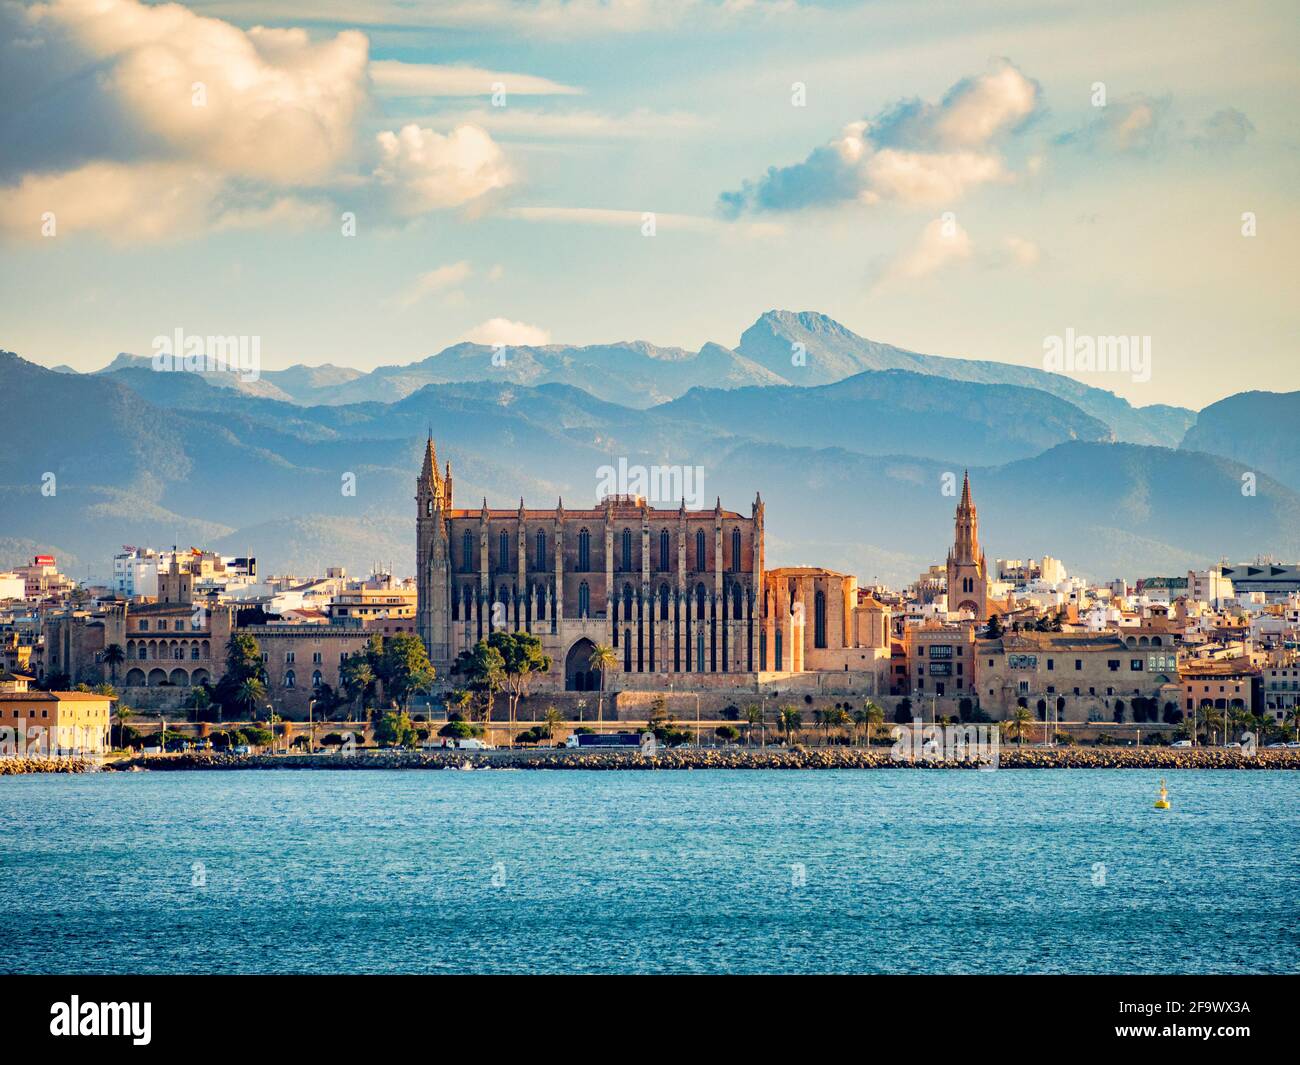 6 Marzo 2020: Palma, Mallorca, España - Vista de la Catedral de Mallorca desde un barco en el puerto, con un telón de fondo de montaña. Foto de stock